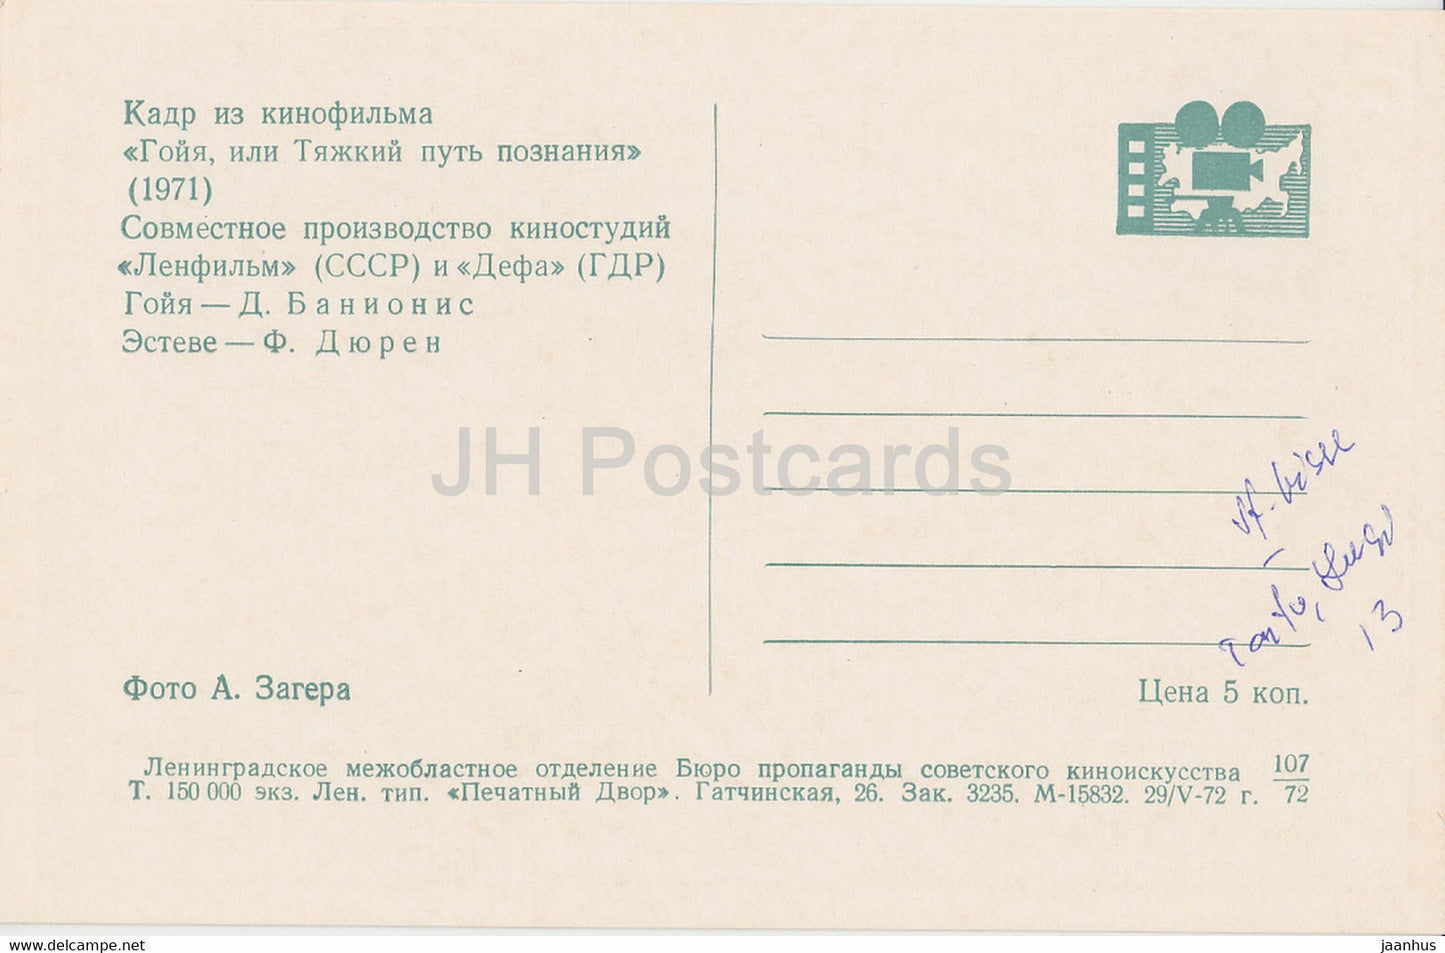 Goya oder der harte Weg zur Erleuchtung – Schauspieler D. Banionis – 1 – Film – Film – Sowjet – 1972 – Russland UdSSR – unbenutzt